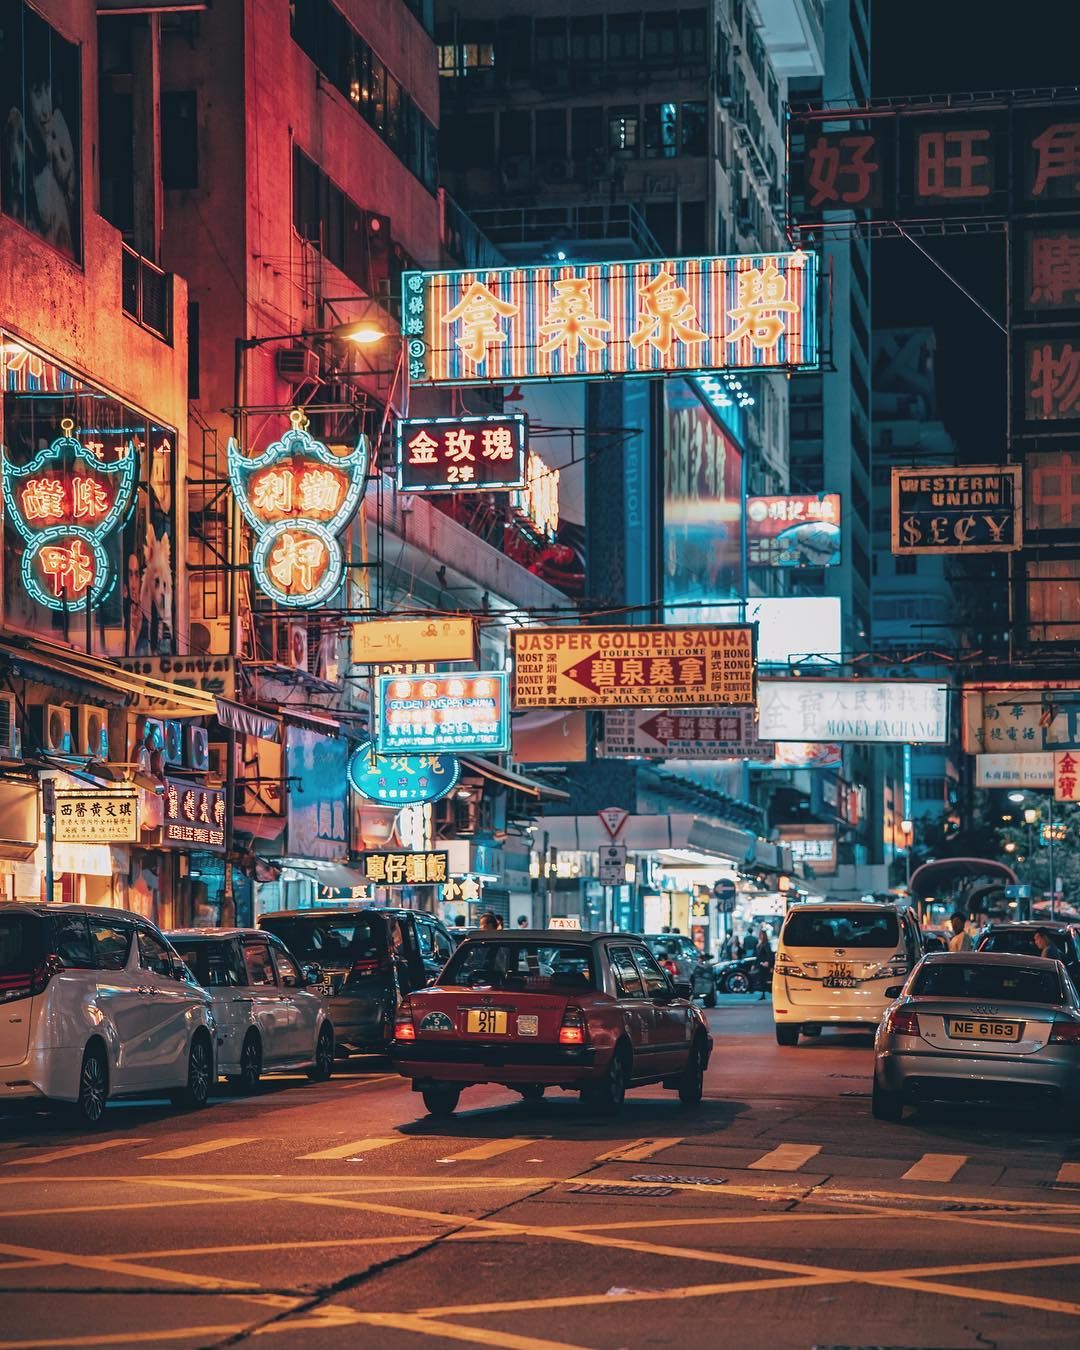 Hong Kong là một thành phố đầy sắc màu và đặc trưng của Trung Quốc, với những cảnh quan đẹp và ẩm thực độc đáo. Hãy cùng khám phá những bức ảnh tuyệt vời của Hong Kong để tìm hiểu thêm về đất nước này và những điều thú vị đang chờ đợi bạn.